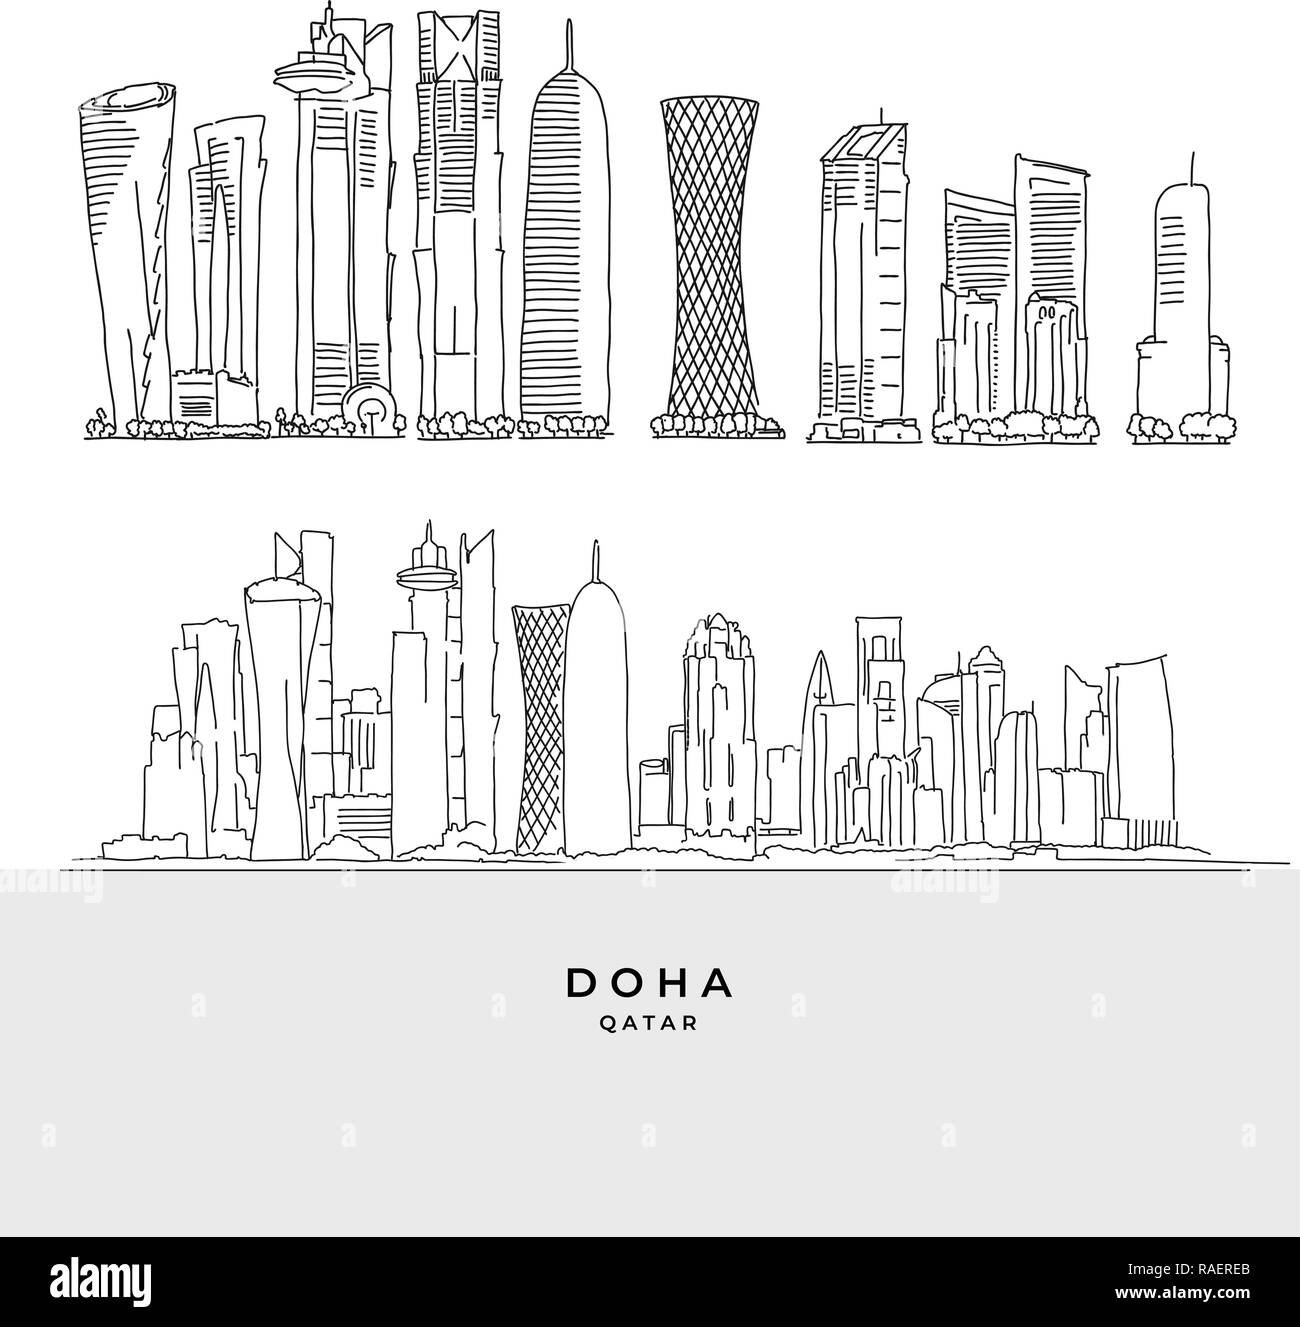 Doha Katar skyscaper eingestellt. Handgezeichneten Vector Illustration. Berühmte Reiseziele Serie. Stock Vektor